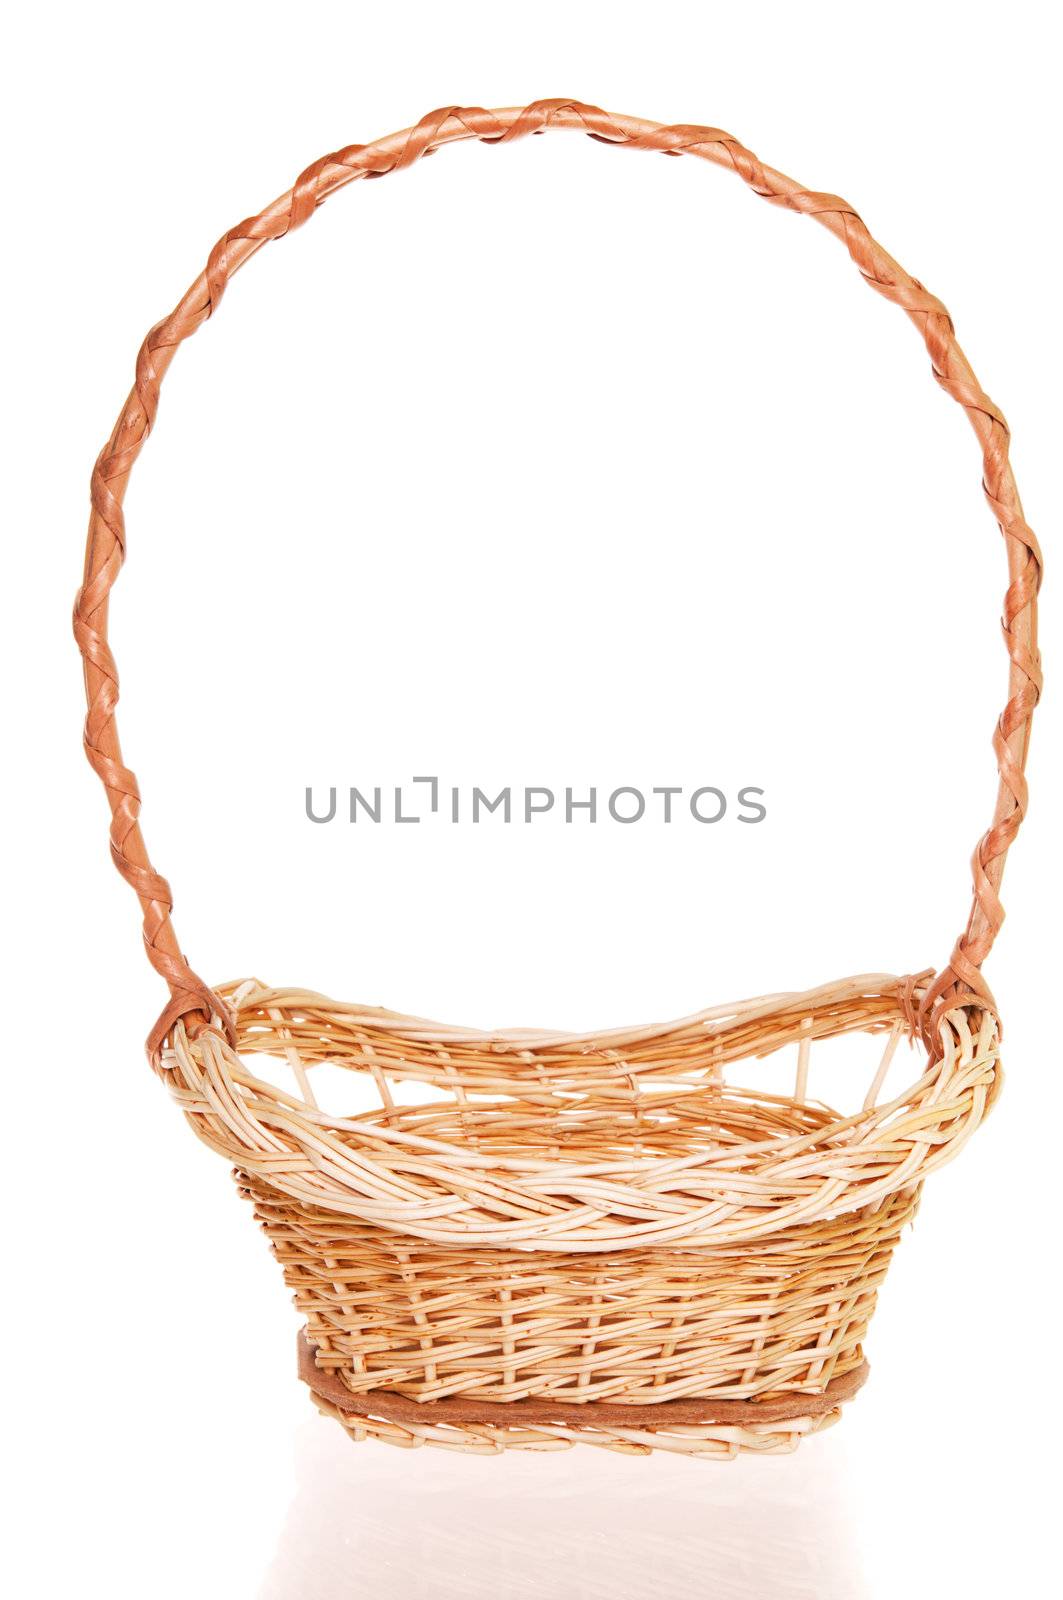 Wicker basket by iryna_rasko